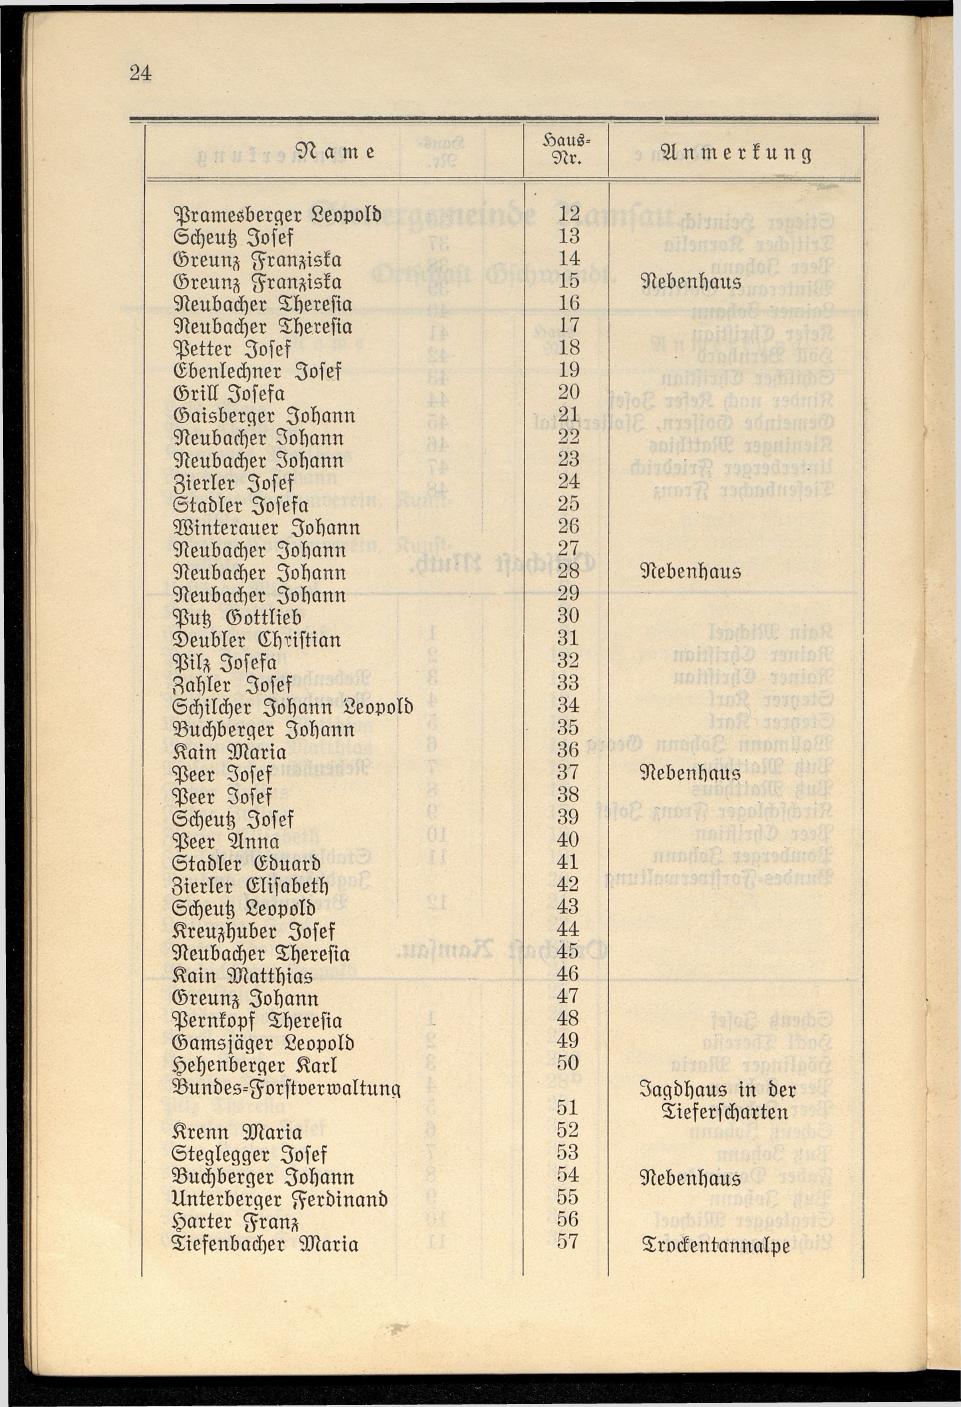 Häuser-Verzeichnis der Gemeinde Goisern nach dem Stande von Juli 1927 - Seite 31